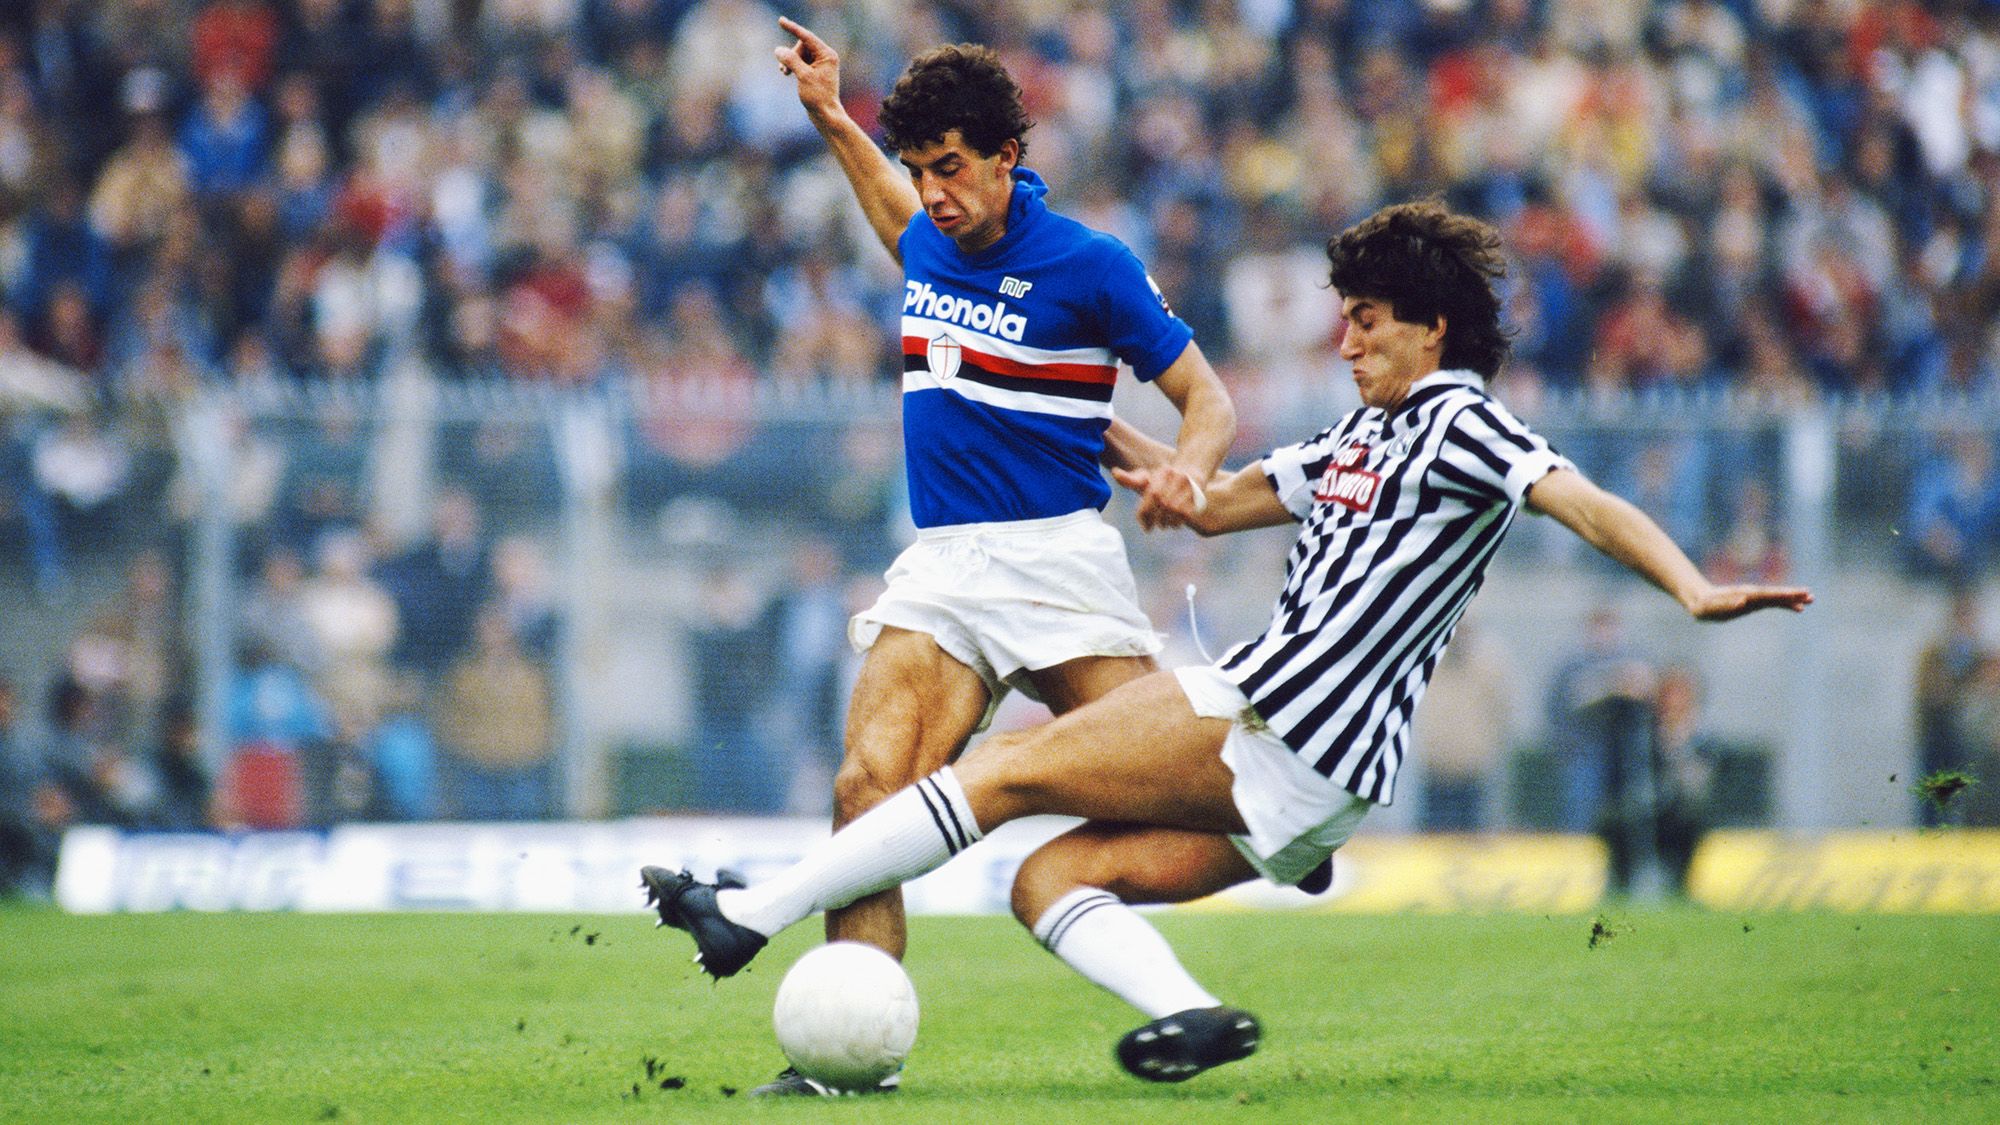 Former Italy striker Gianluca Vialli dies aged 58